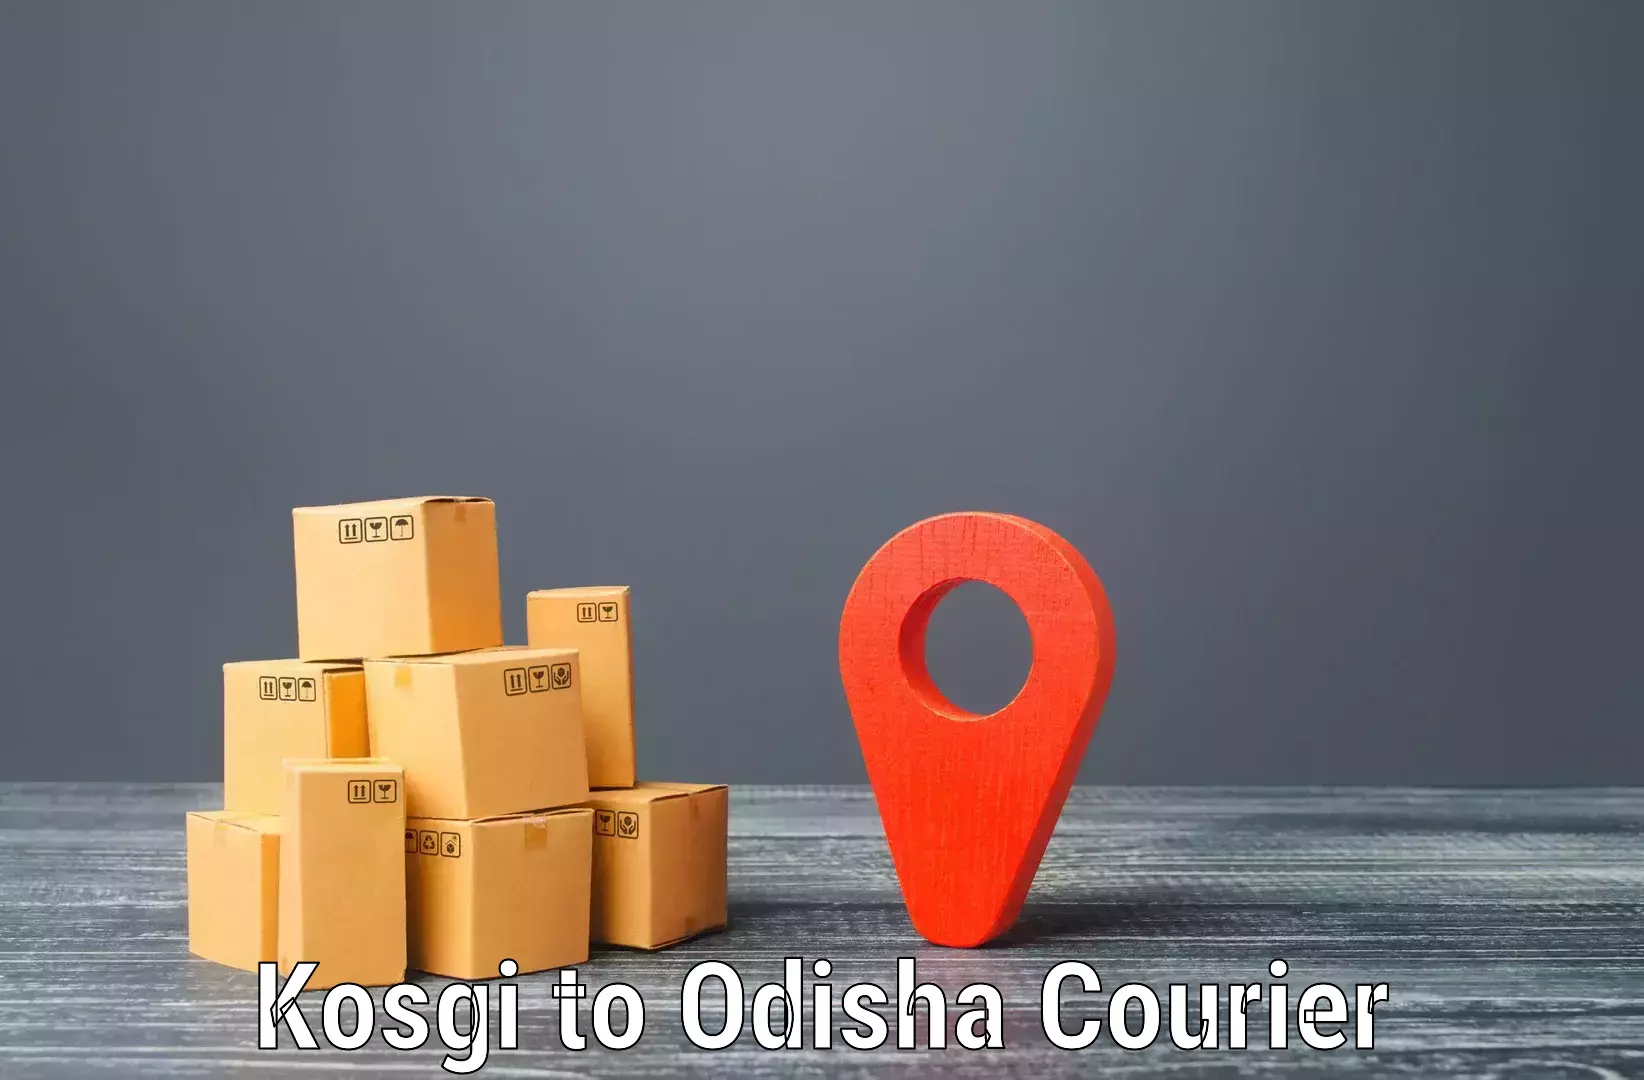 Express logistics service Kosgi to Telkoi